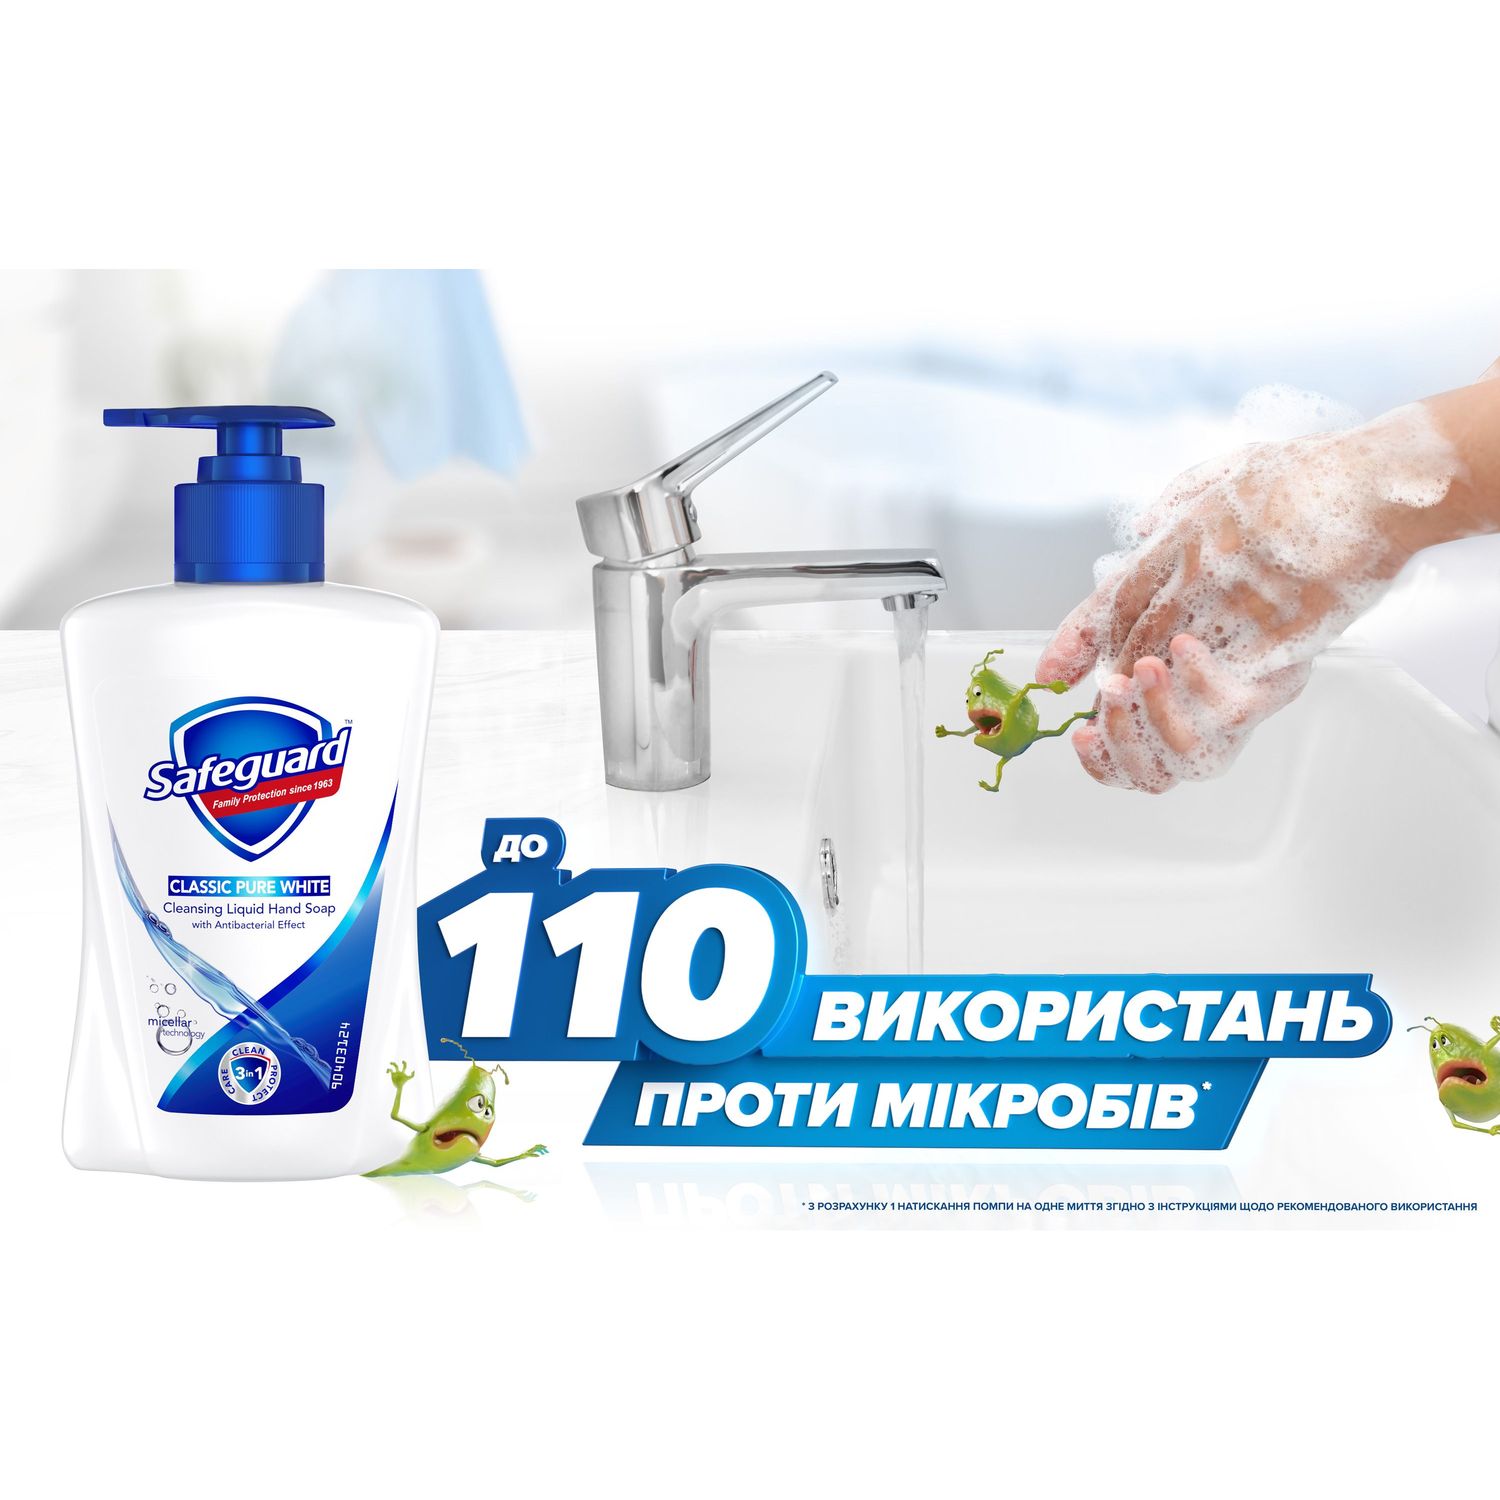 Жидкое мыло Safeguard Классическое Ослепительно белое, с антибактериальным эффектом, 225 мл - фото 2